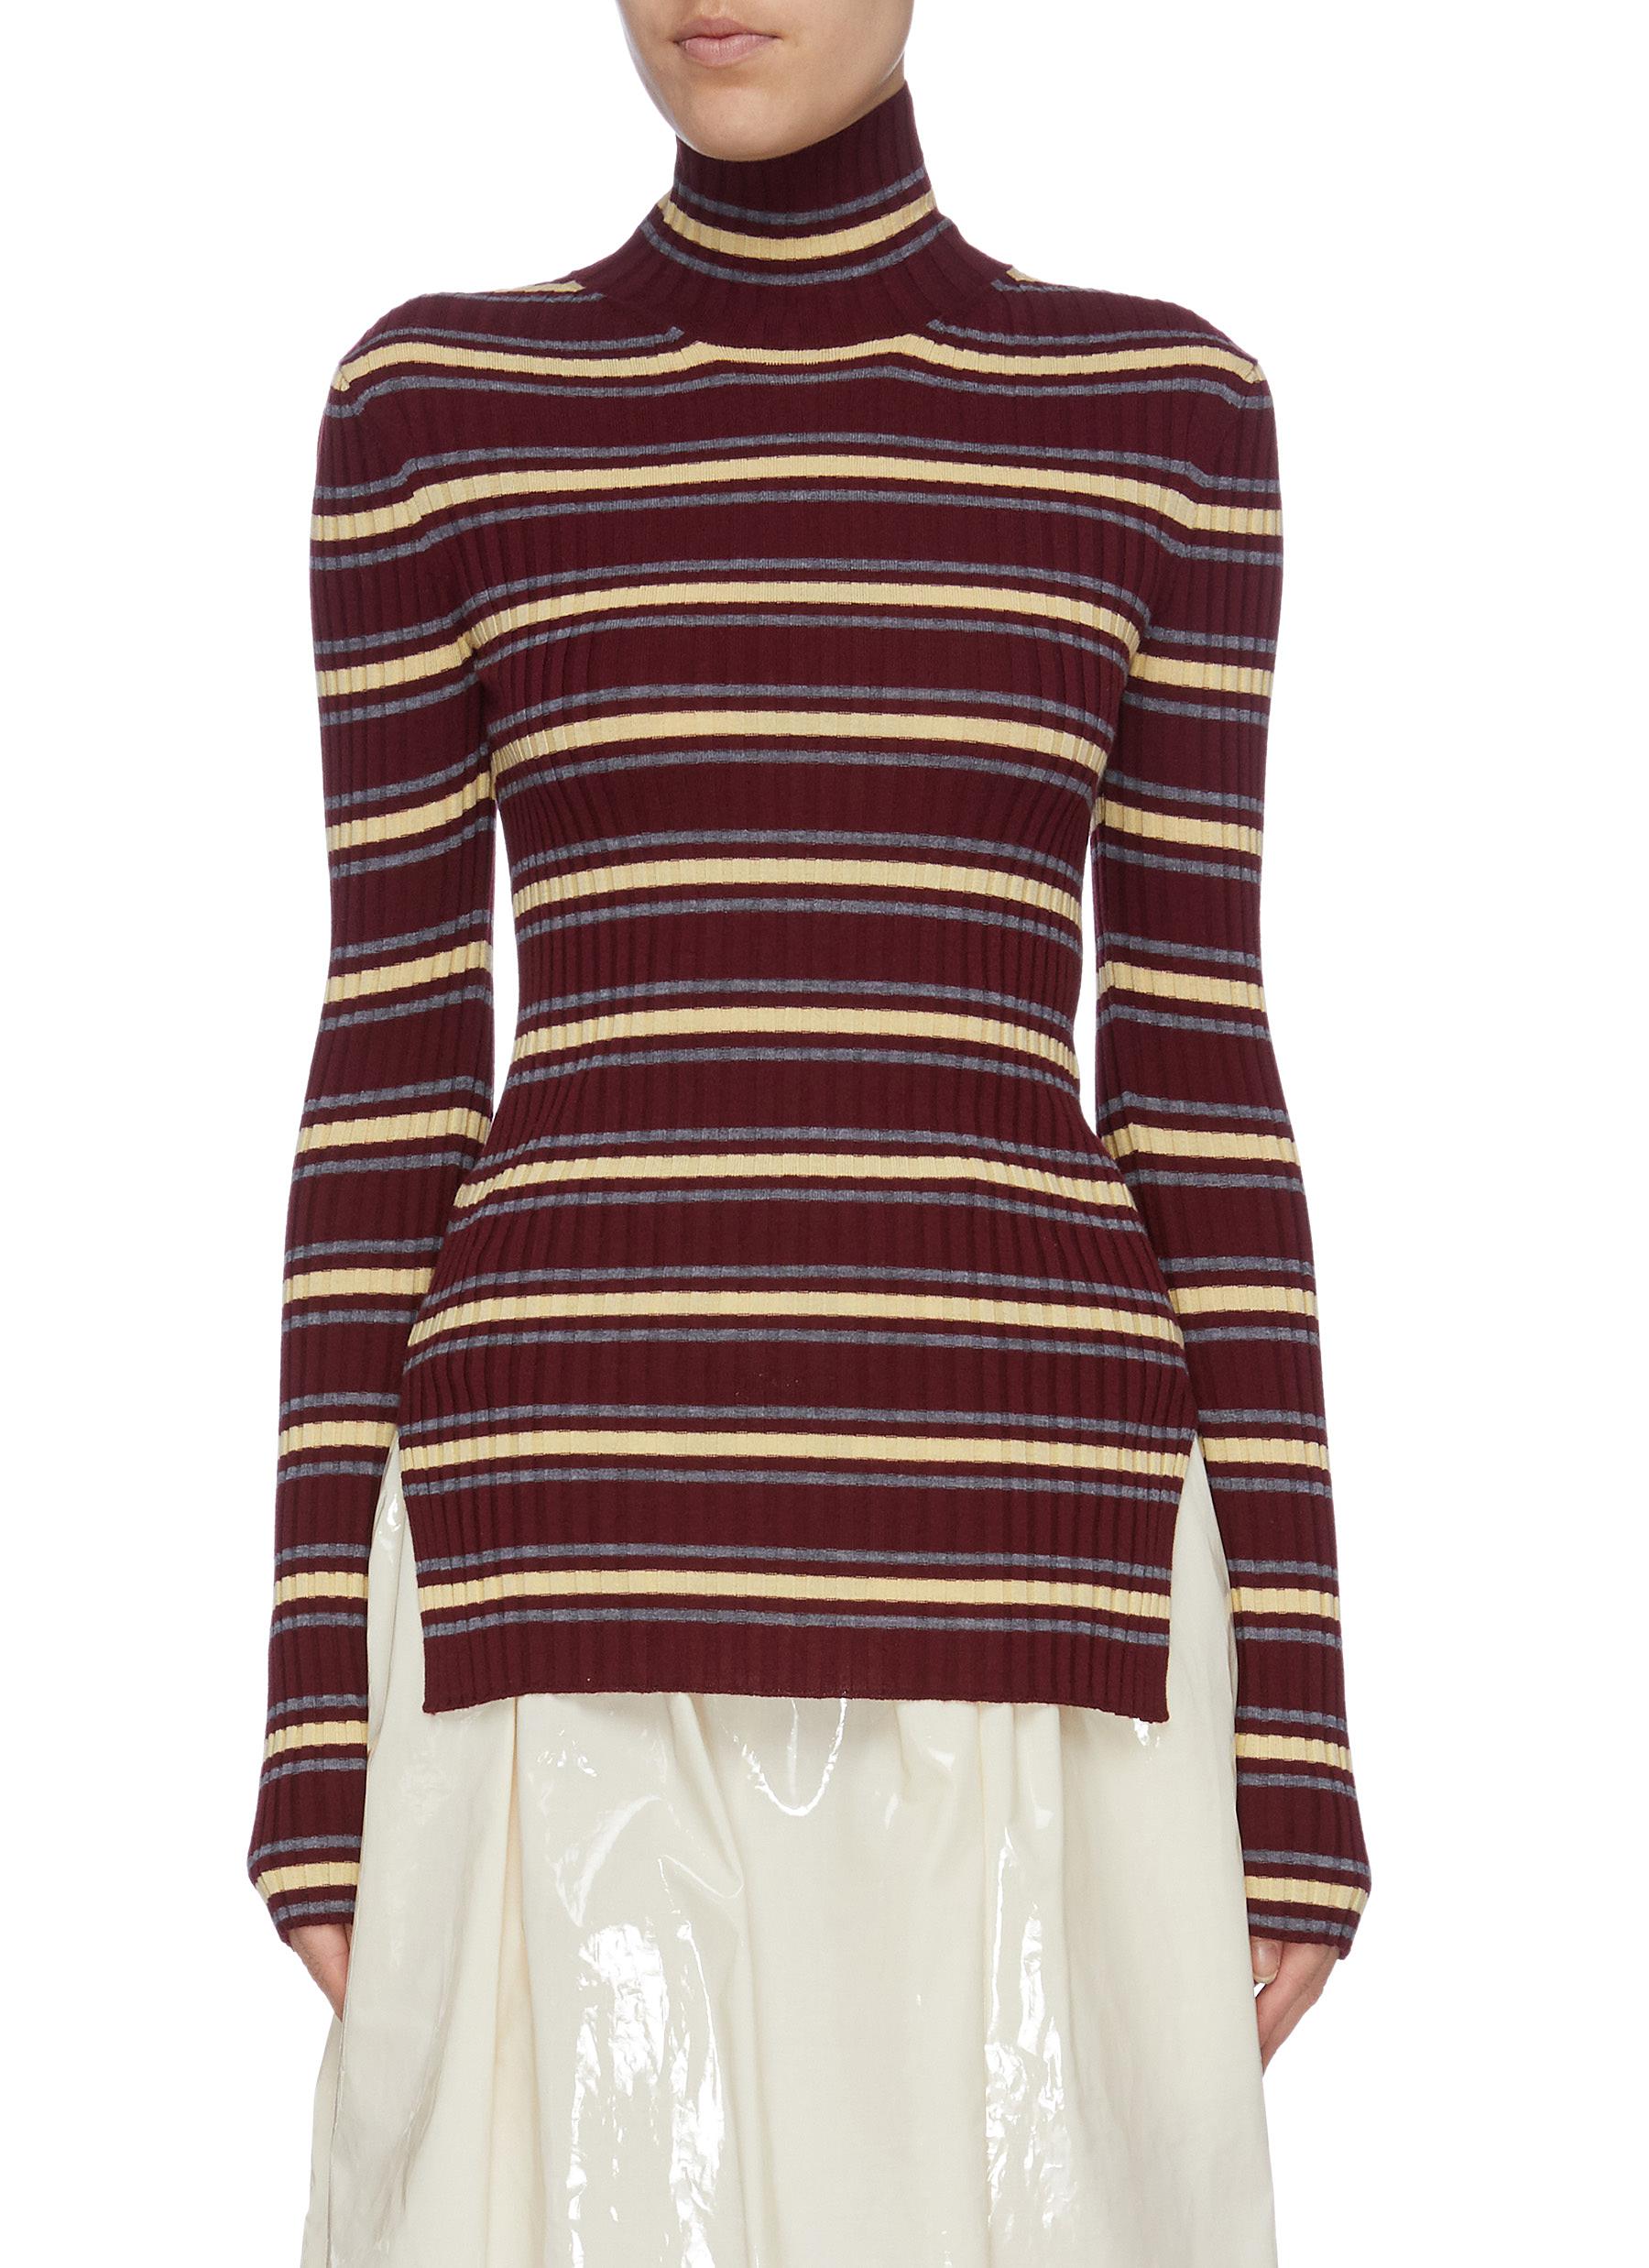 Stripe Merino wool rib knit turtleneck sweater by Plan C